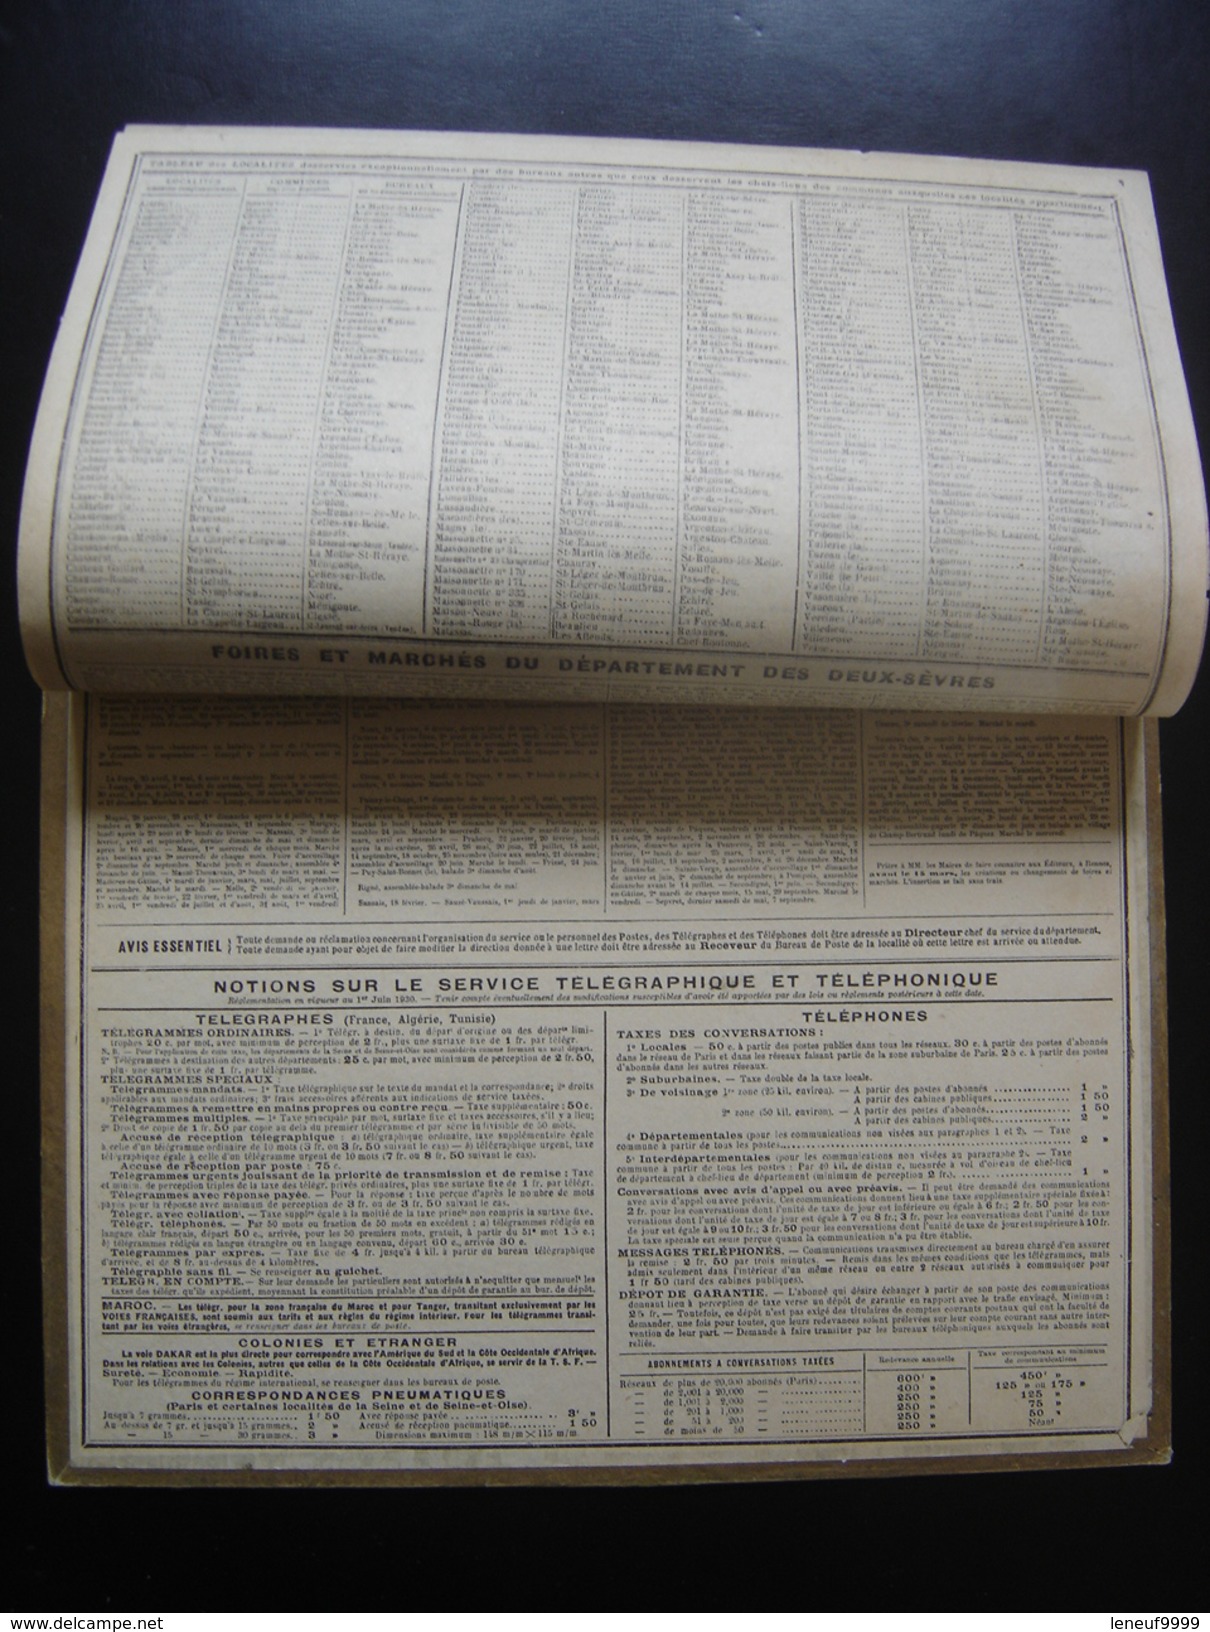 Rare Calendrier PTT Almanach Postes 1931 RETOUR DE CHASSE NOUVELLE CALEDONIE Convient Pour 2026 - Groot Formaat: ...-1900